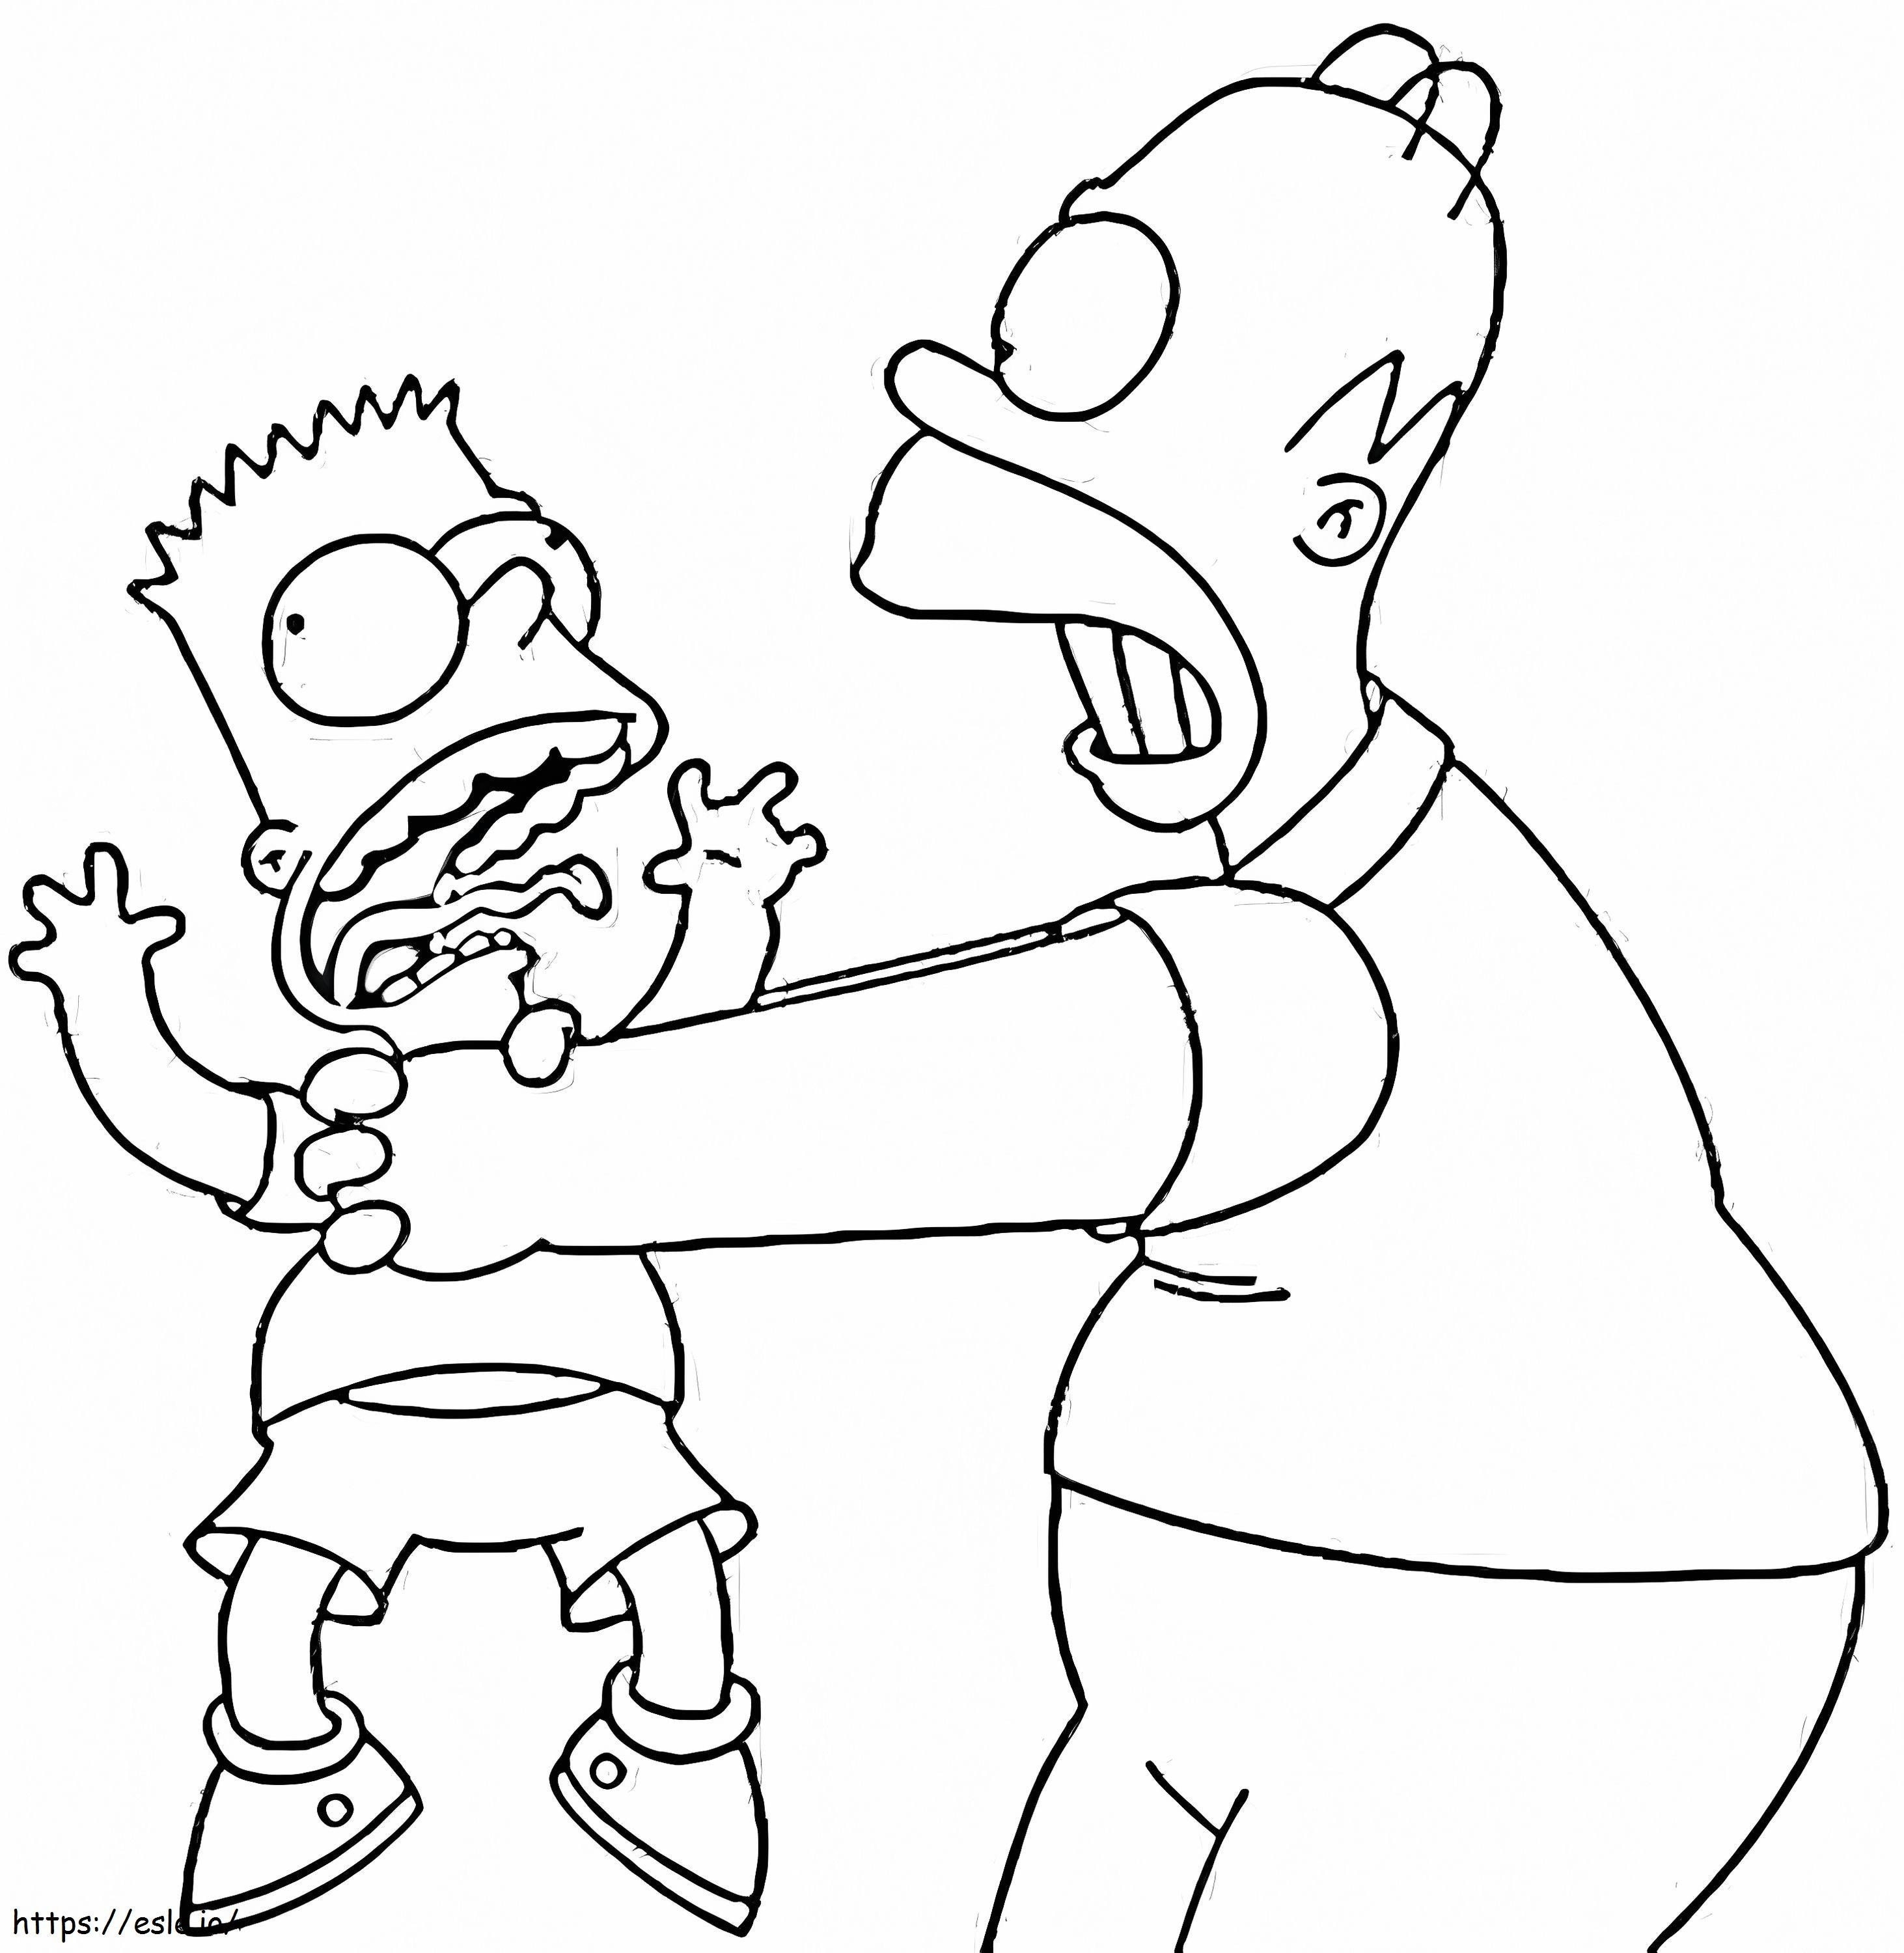 Coloriage Bart et Homer Simpson à imprimer dessin